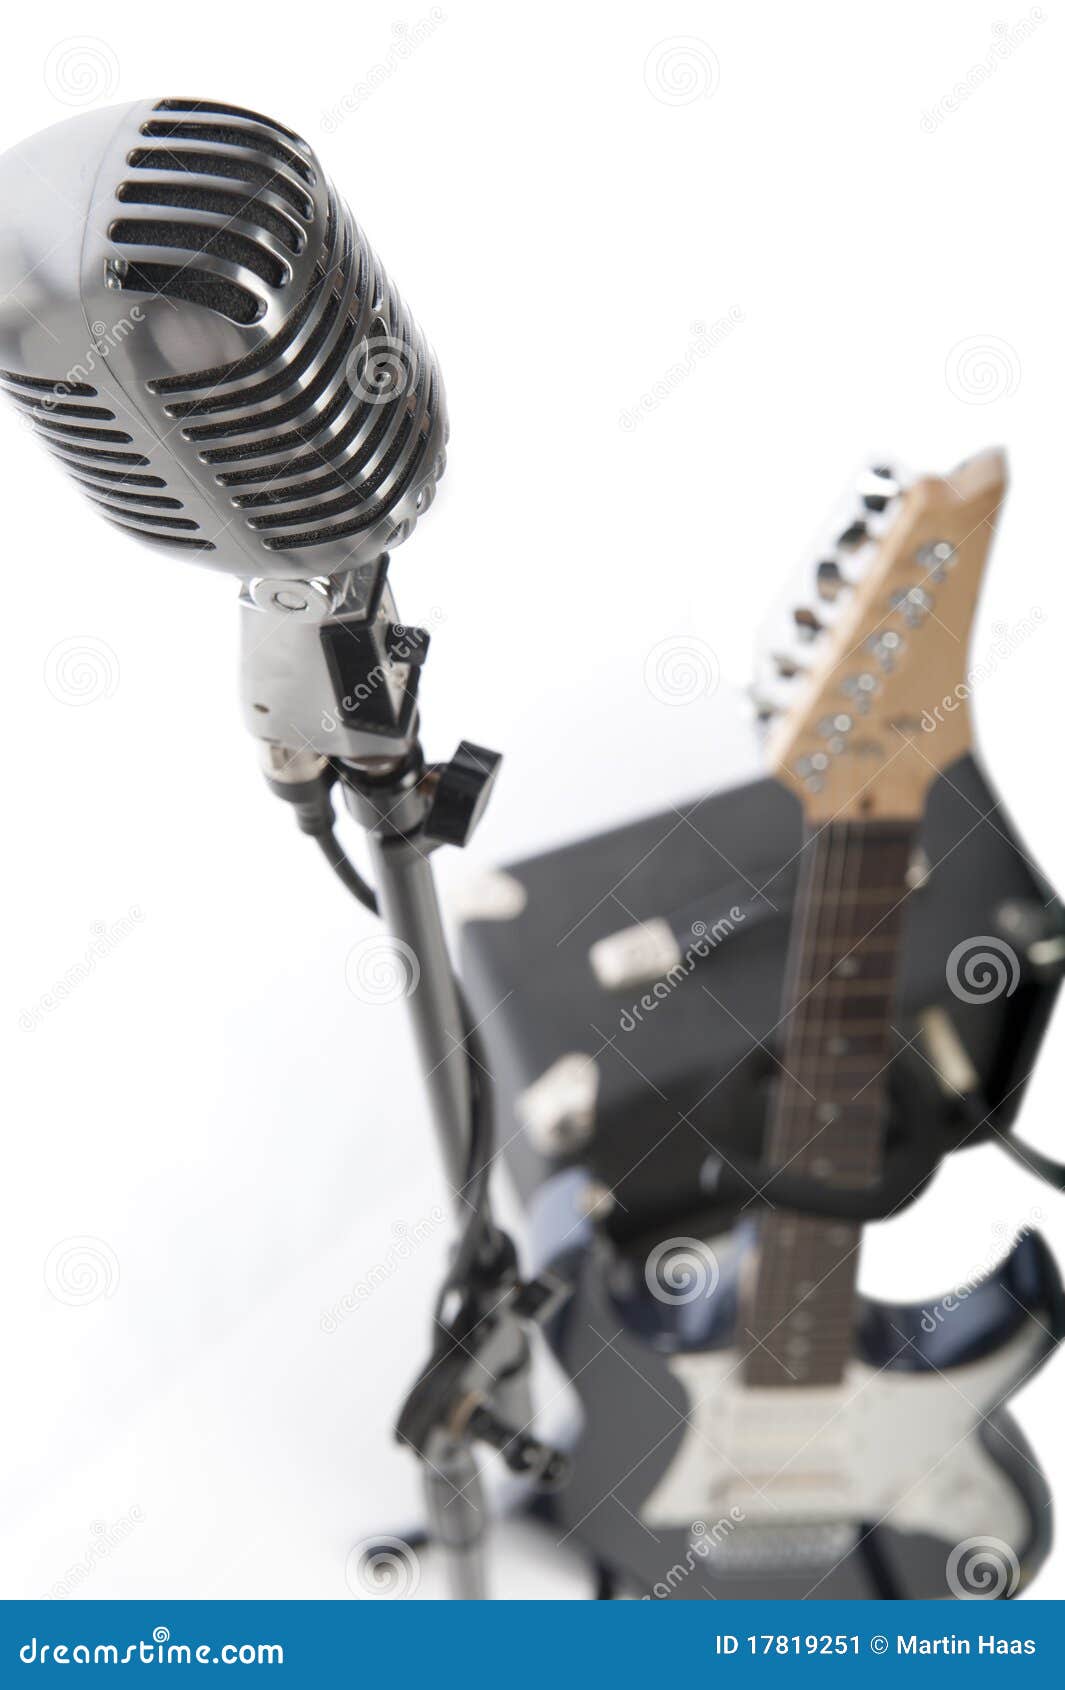 vintage-microphone-electric-guitar-amp-17819251.jpg